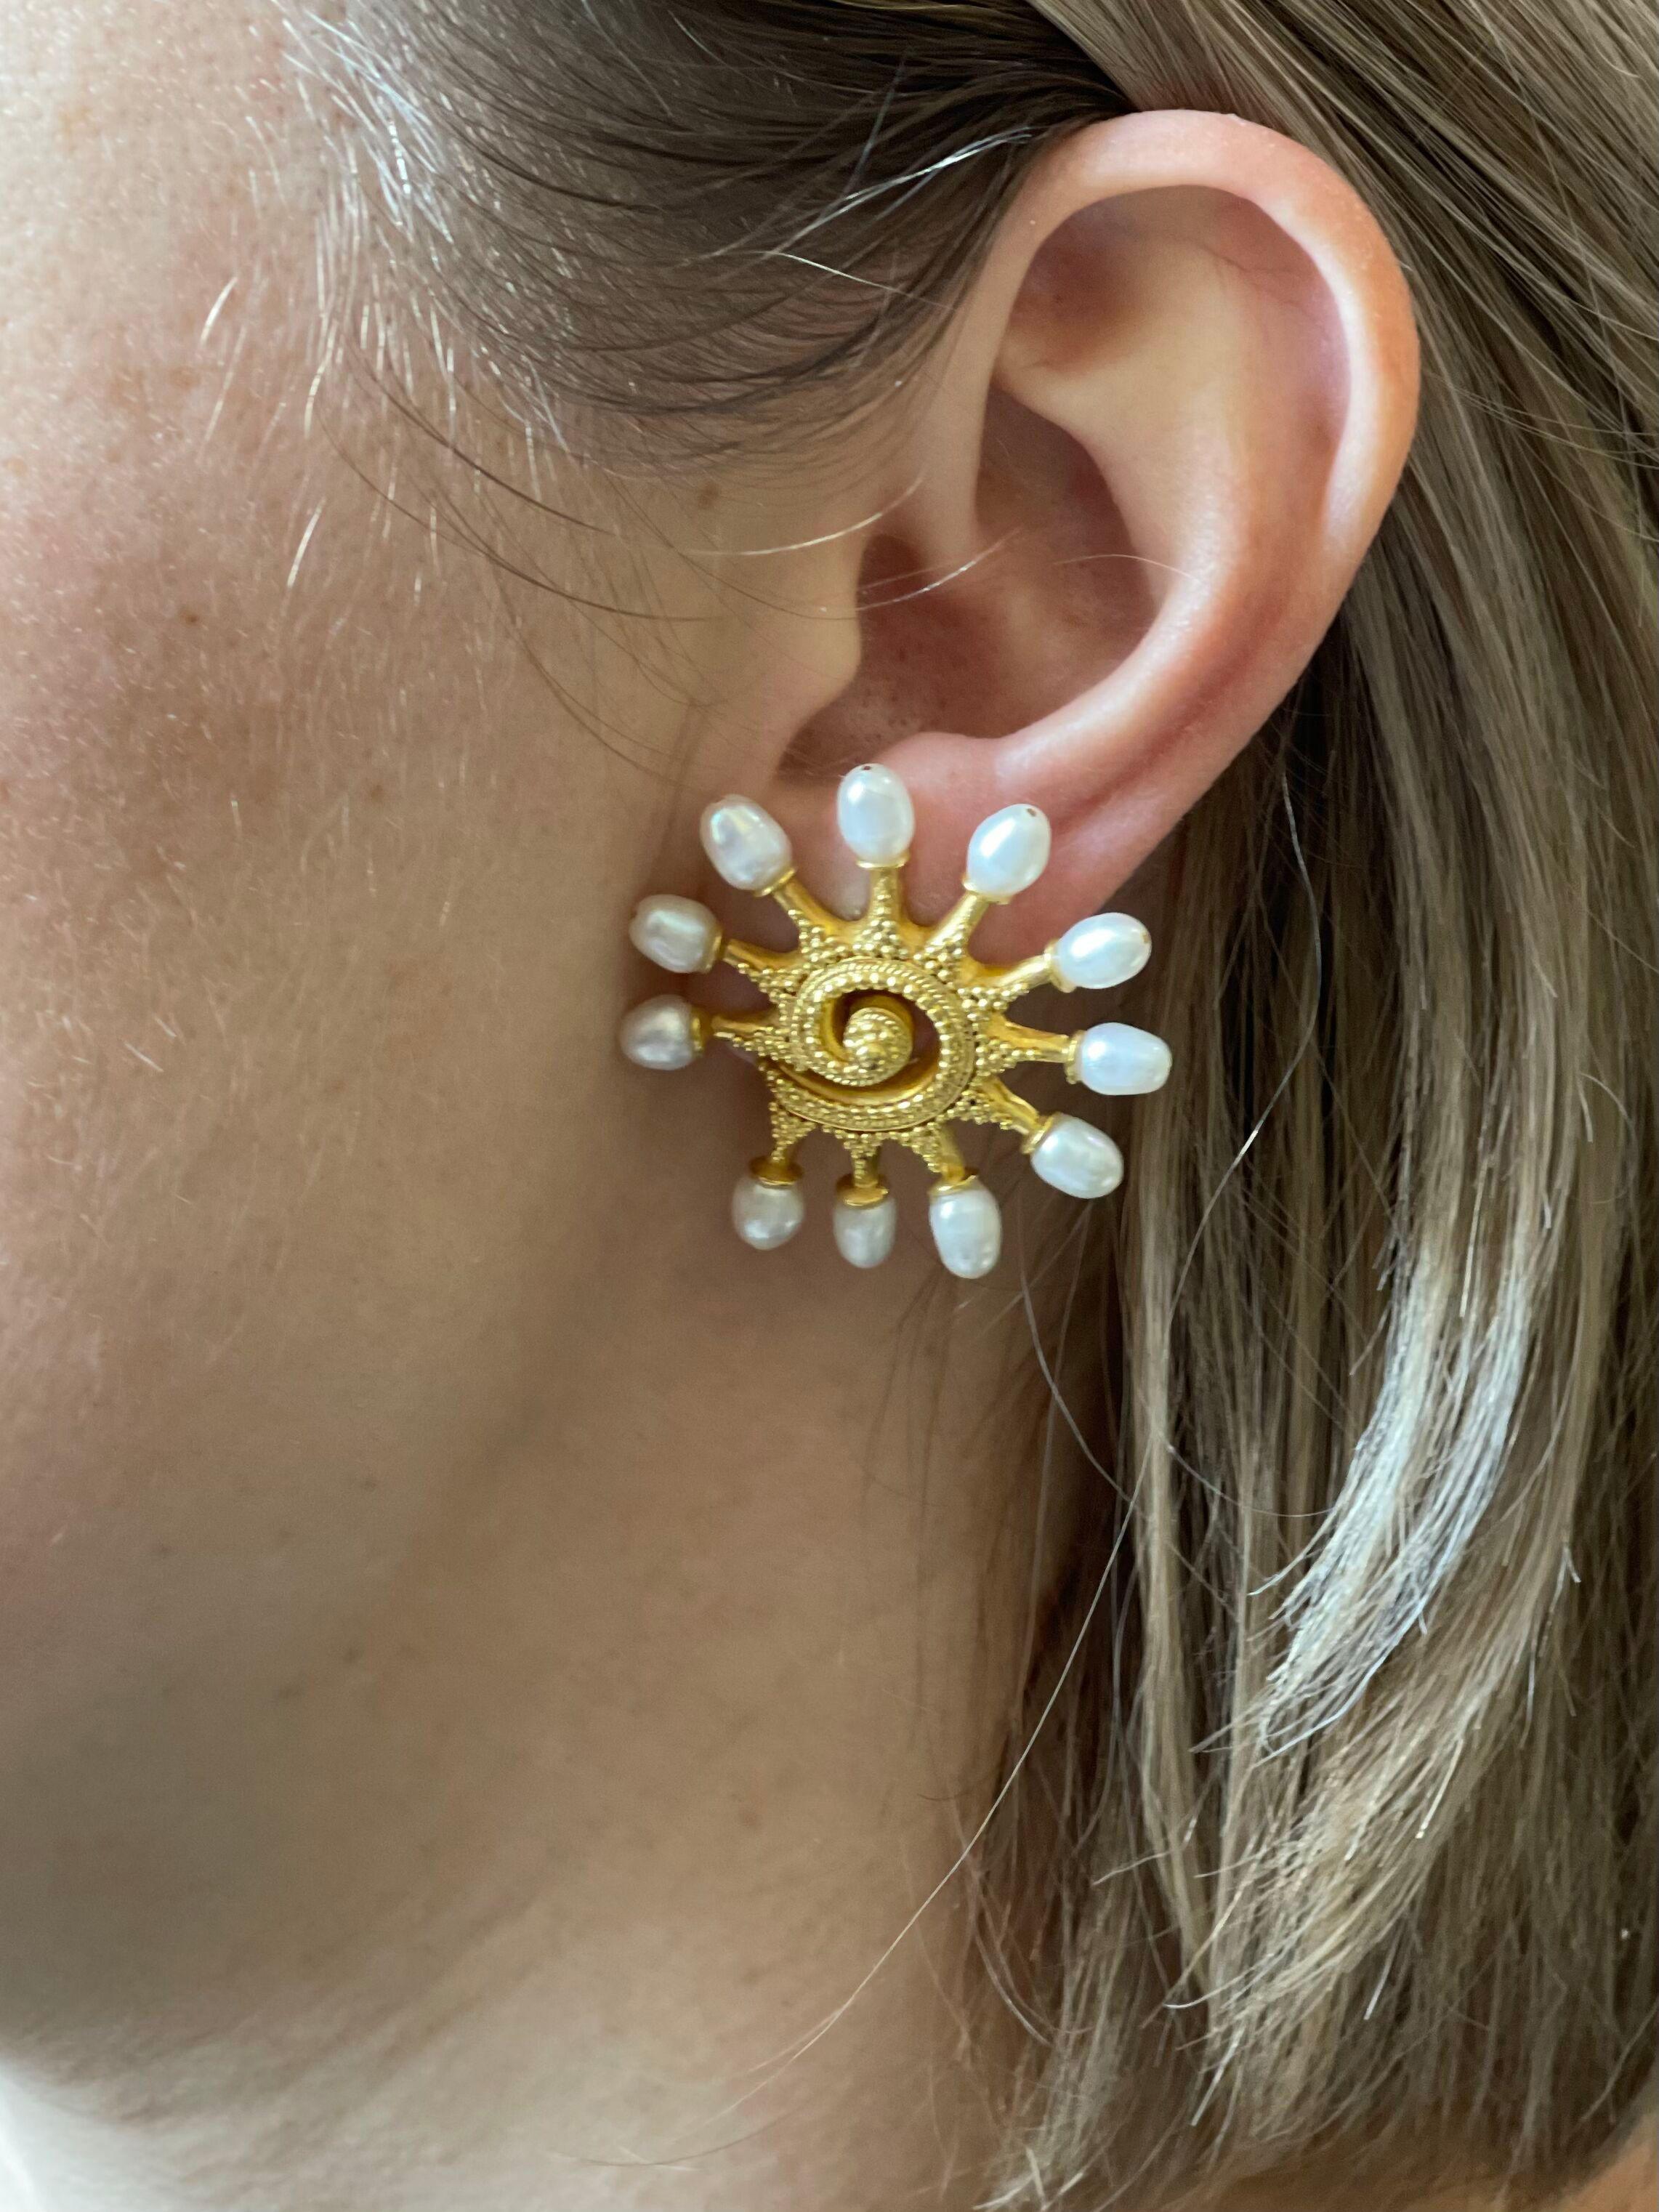 Ein Paar große Ohrringe aus 18-karätigem Gold, gefertigt von Ilias Lalaounis aus Griechenland, mit Perlen. Die Ohrringe sind 1,5